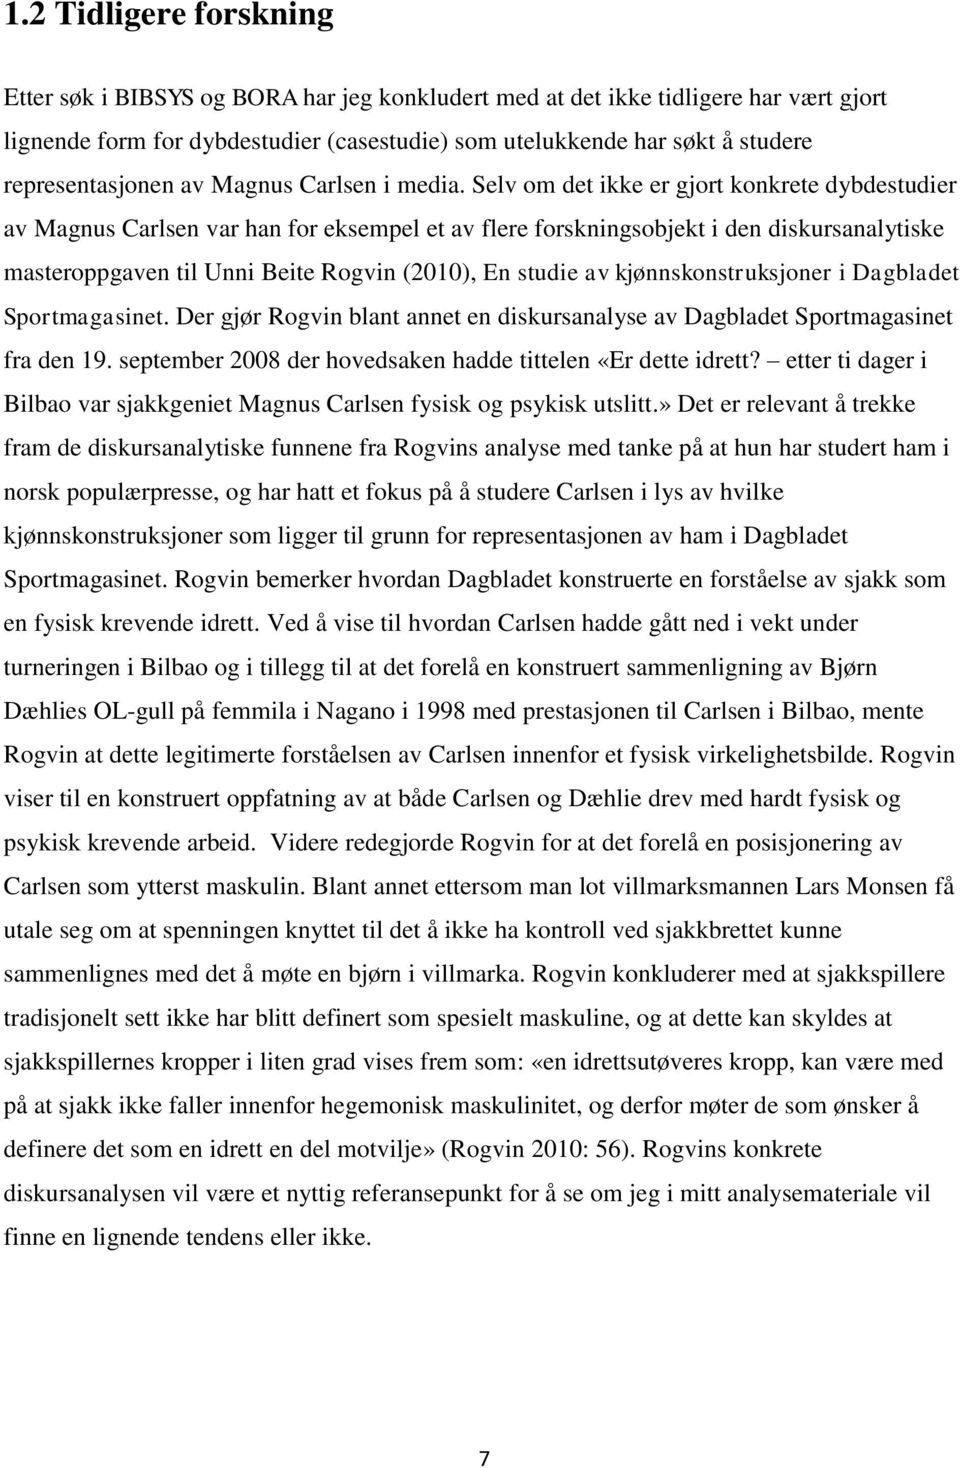 Selv om det ikke er gjort konkrete dybdestudier av Magnus Carlsen var han for eksempel et av flere forskningsobjekt i den diskursanalytiske masteroppgaven til Unni Beite Rogvin (2010), En studie av